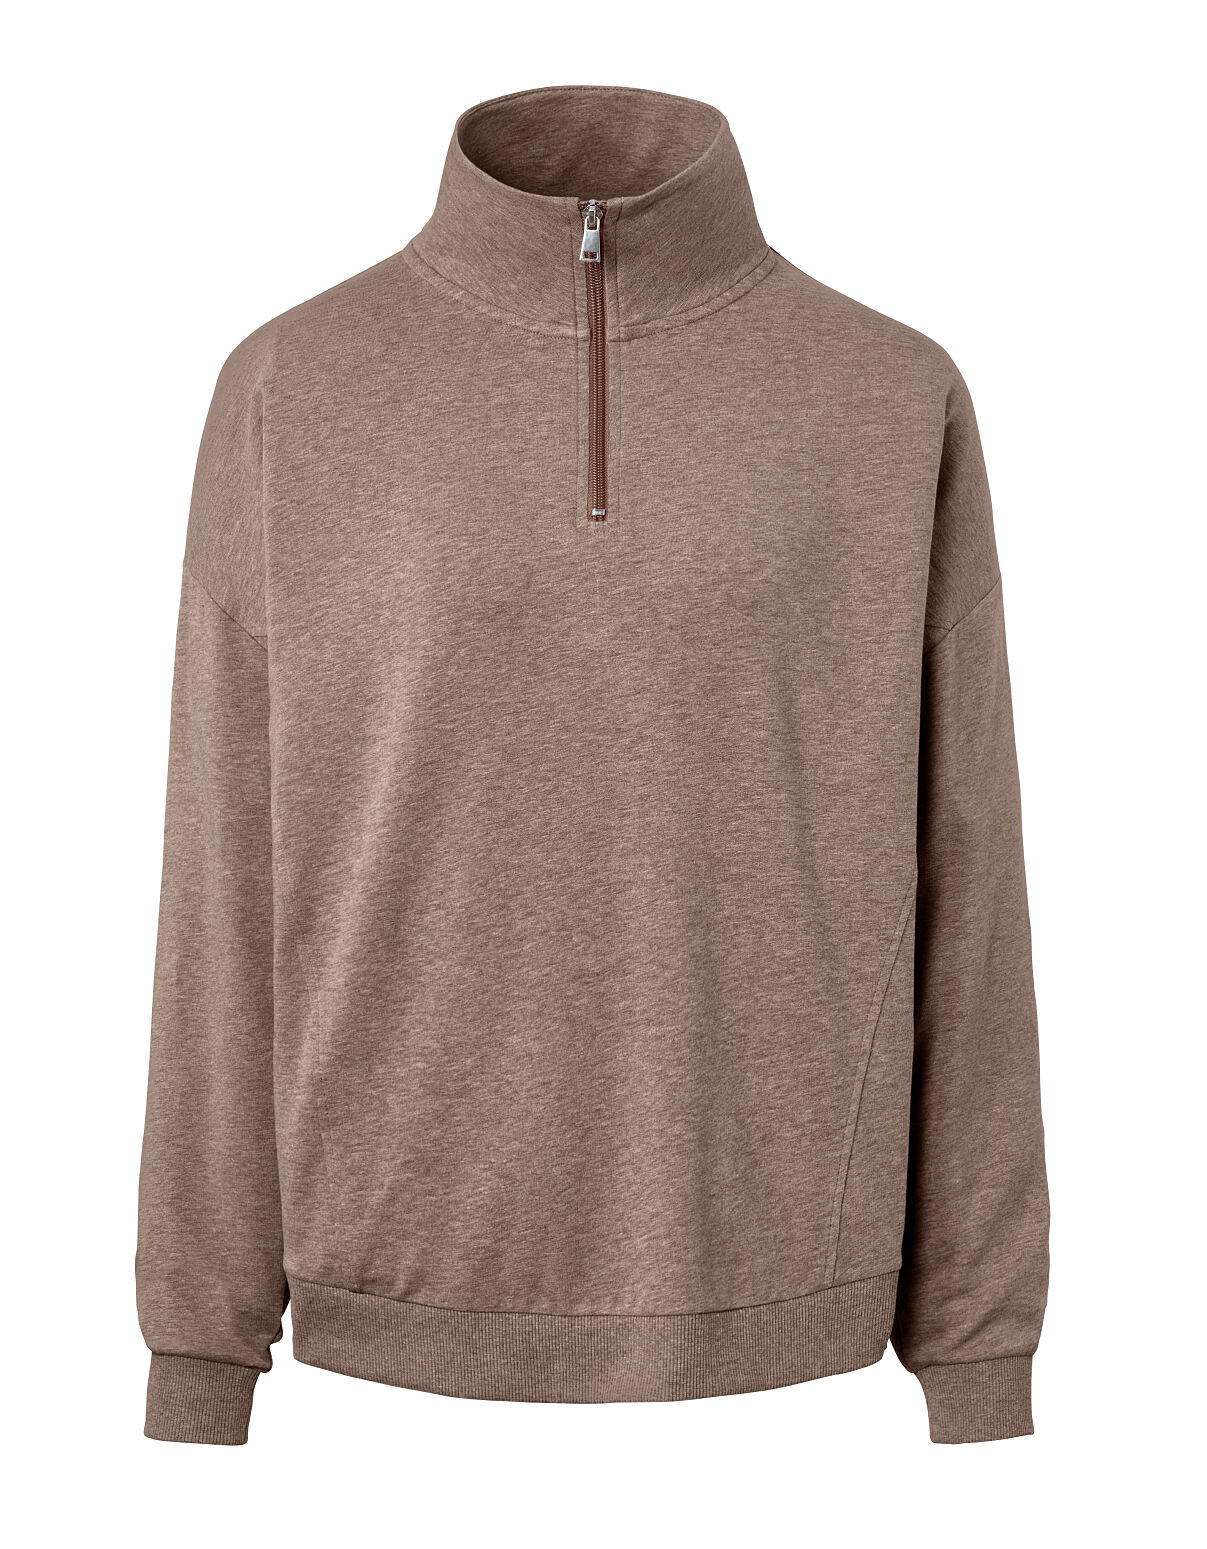 TCHIBO_127430 Loungewear-Sweater FS 1 06.23